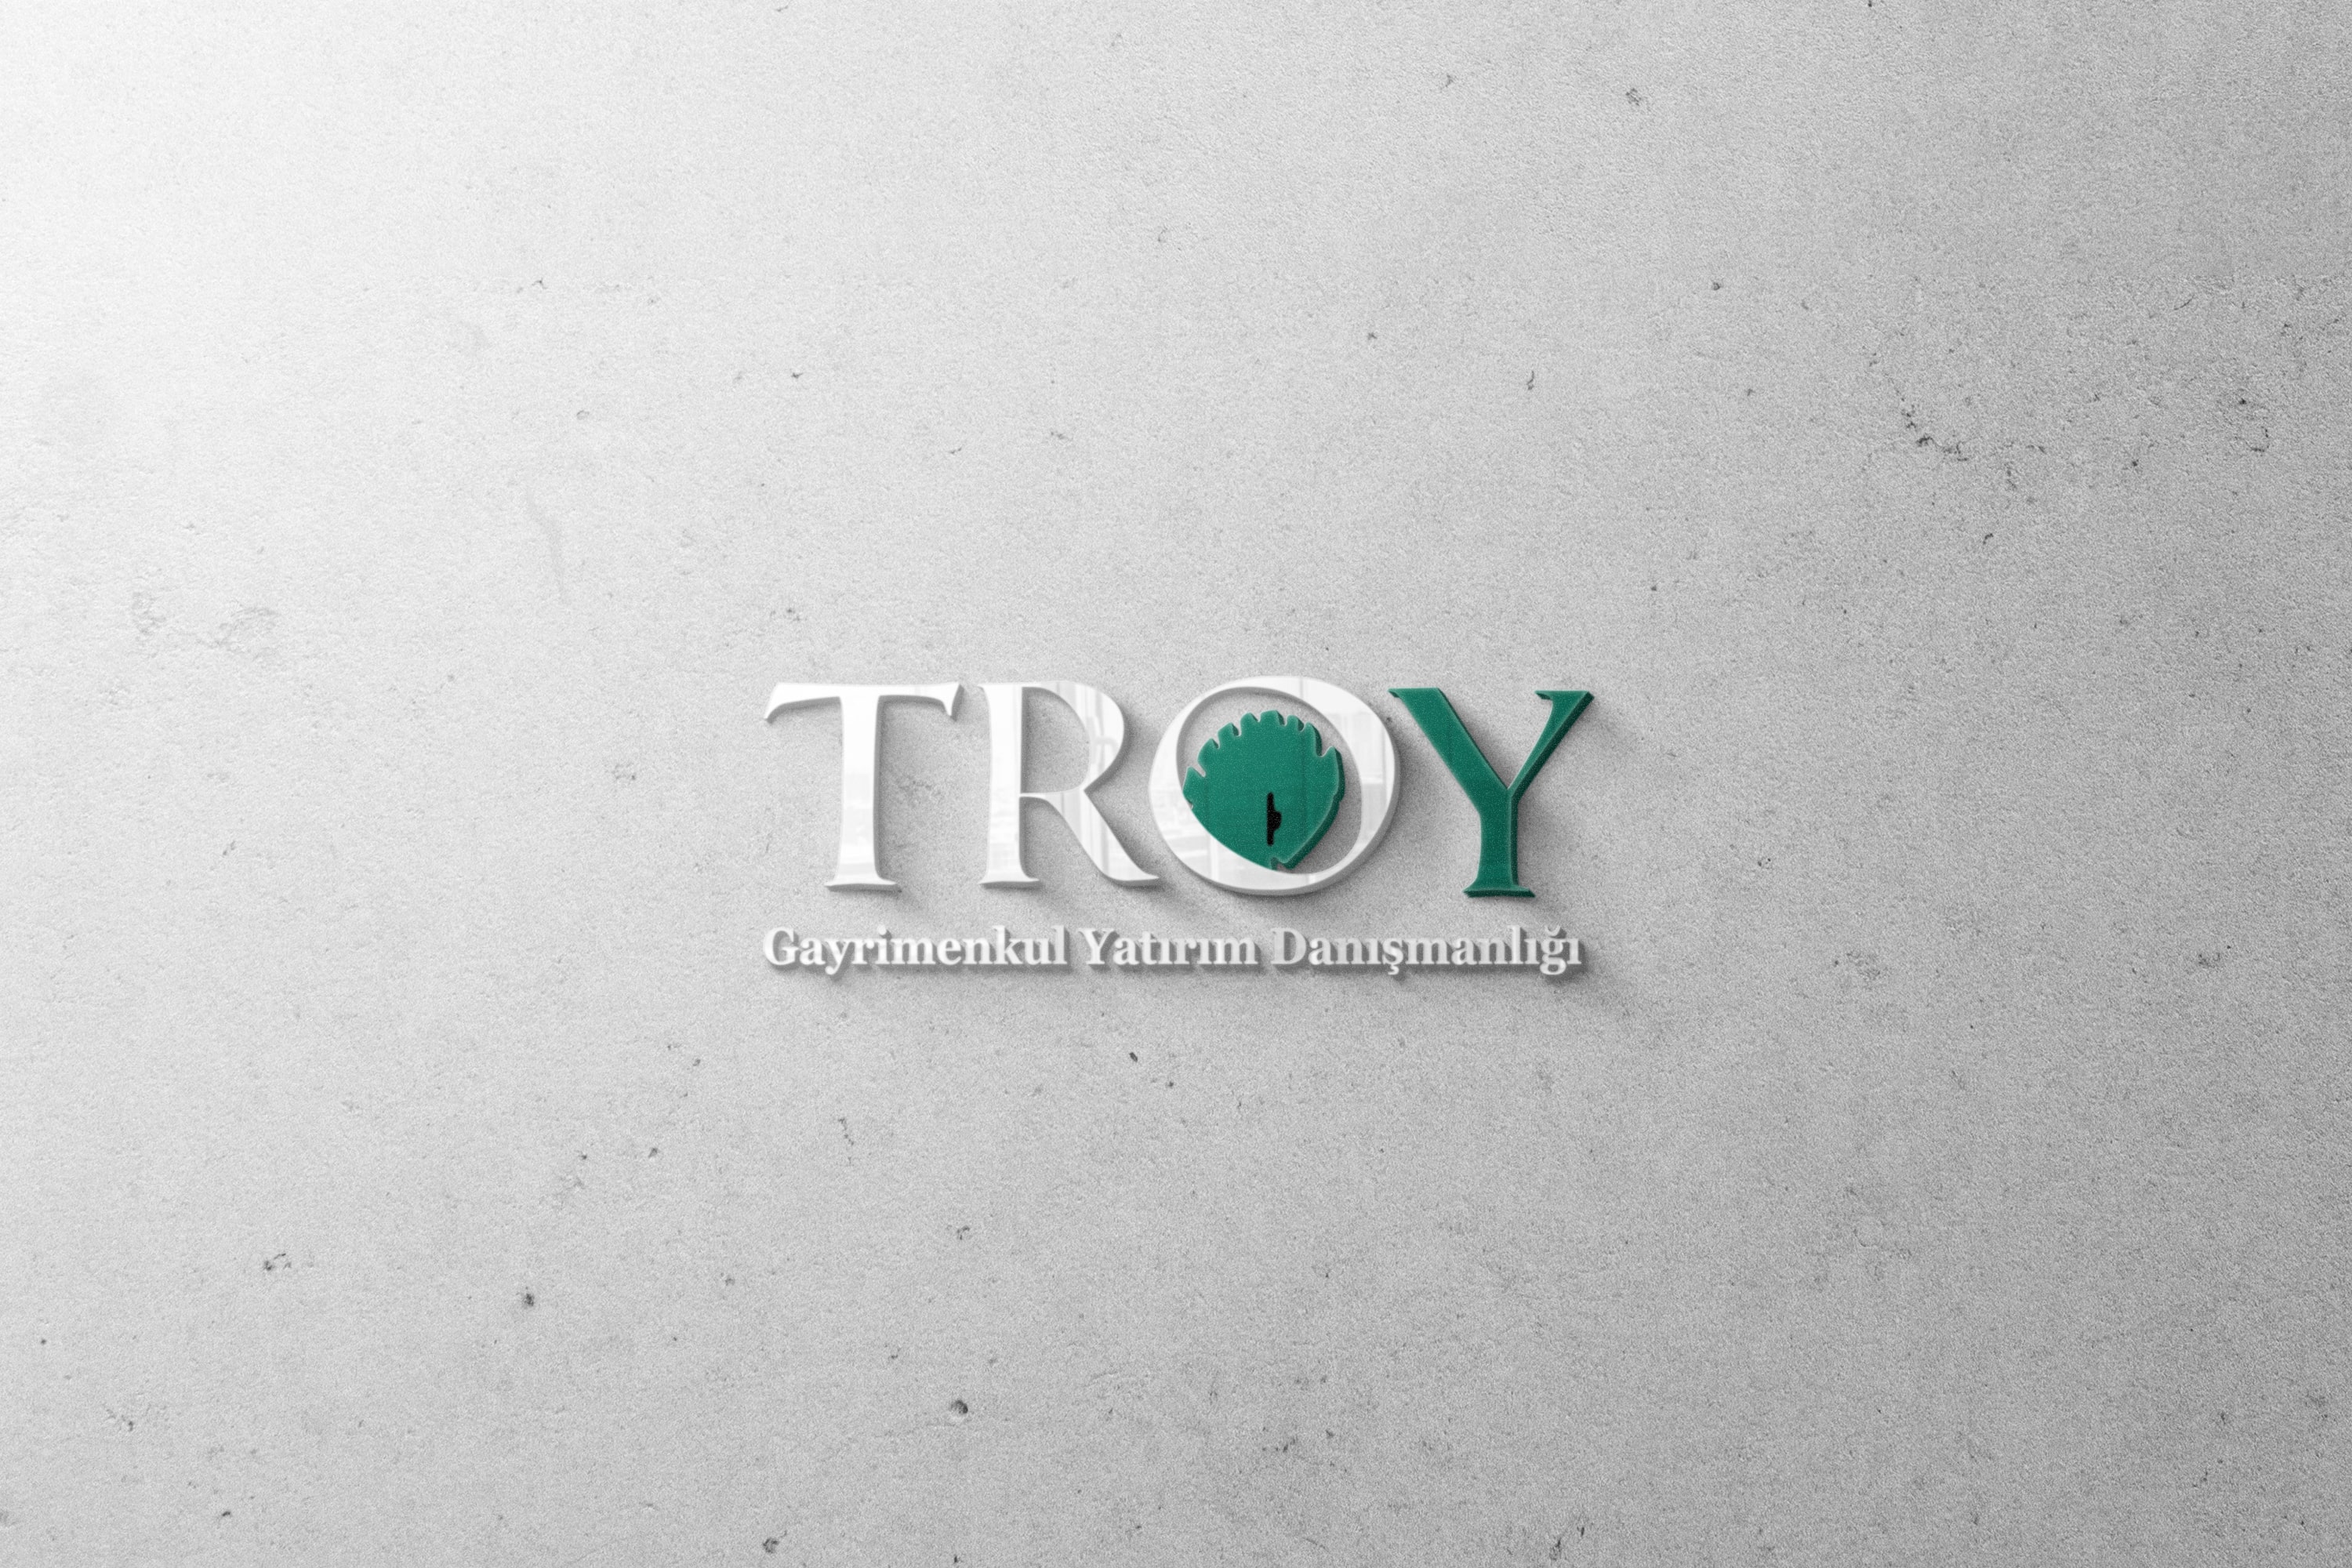 Troy Gayrimenkul Yatırım Danışmanlığı